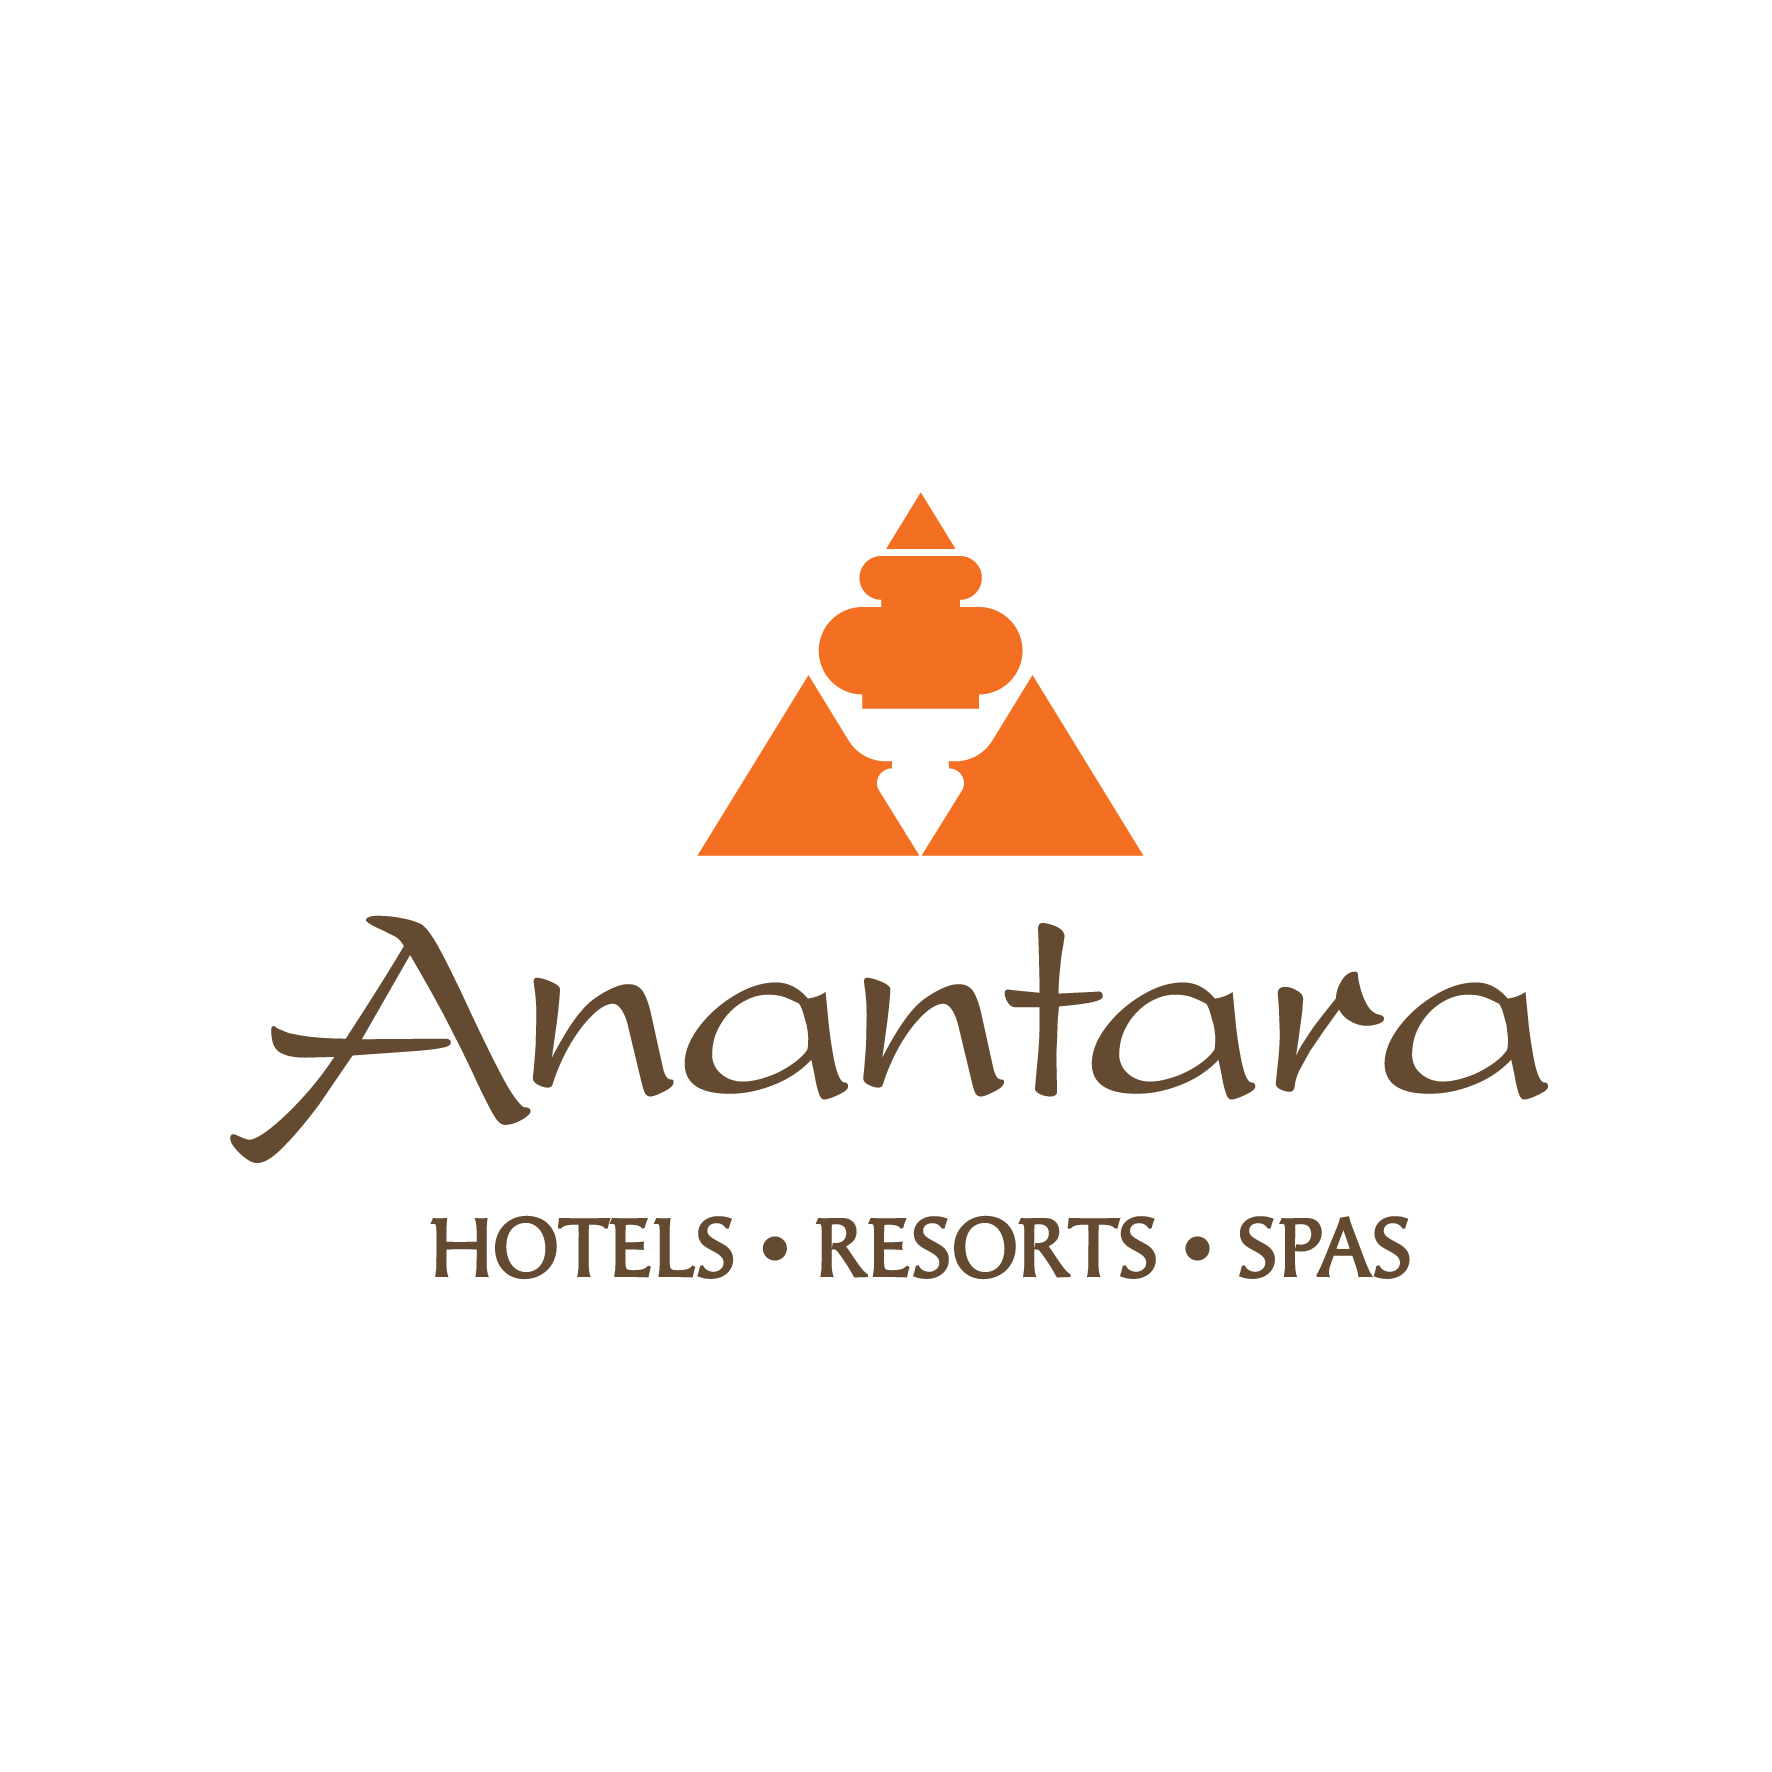 ANANTARA HOTELS & RESORTS